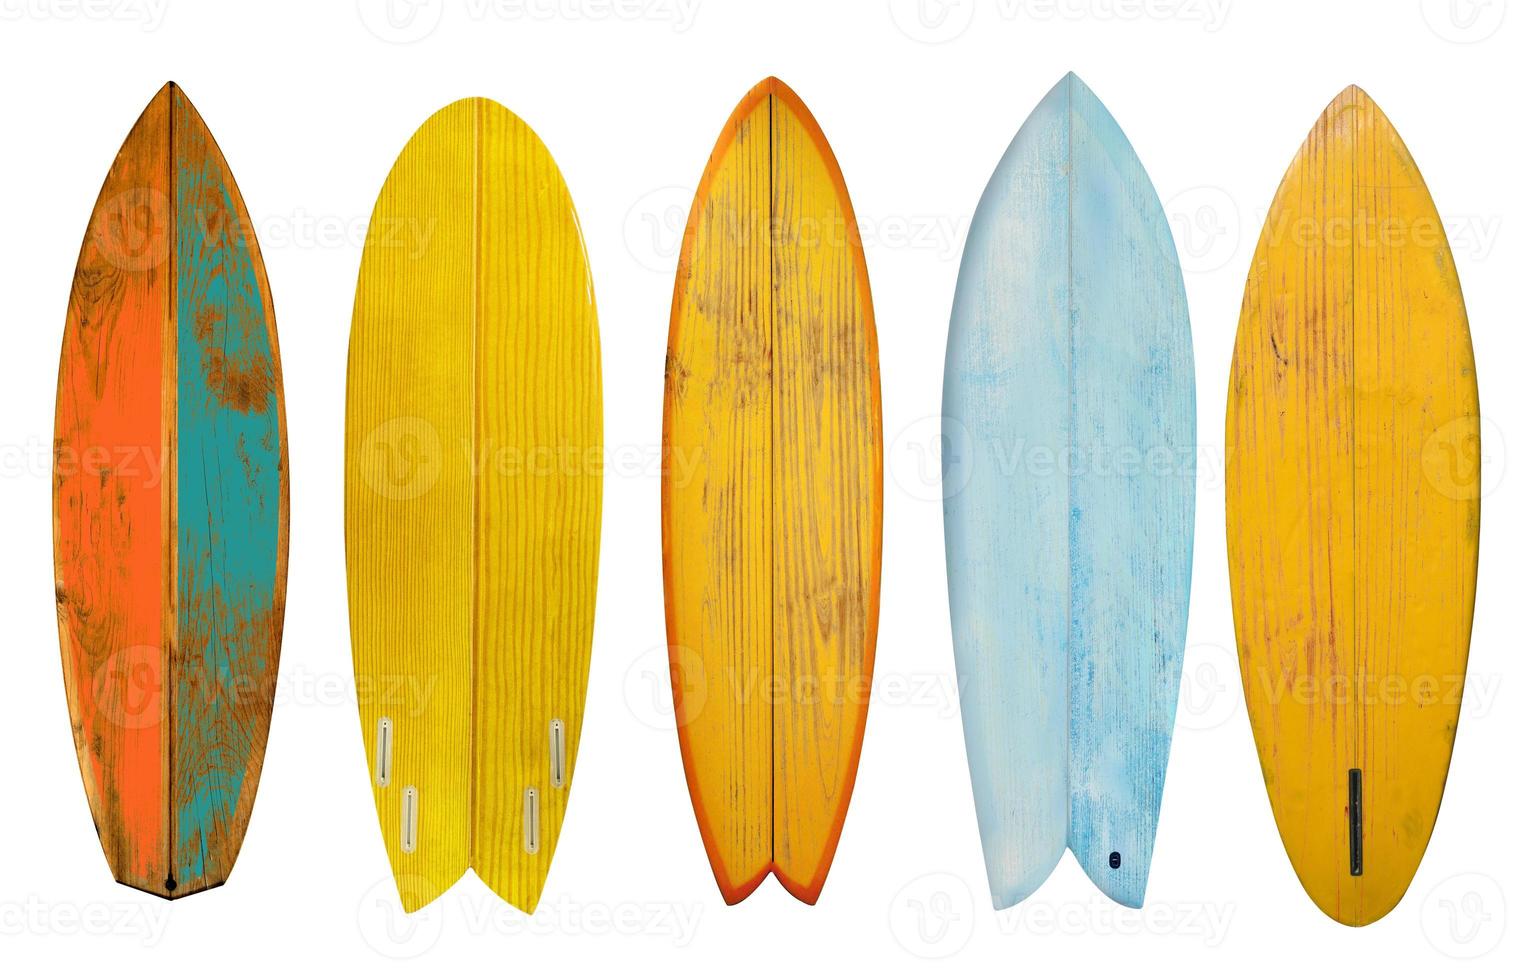 raccolta di tavola da surf shortboard in legno vintage isolata su bianco con tracciato di ritaglio per oggetti, stili retrò. foto